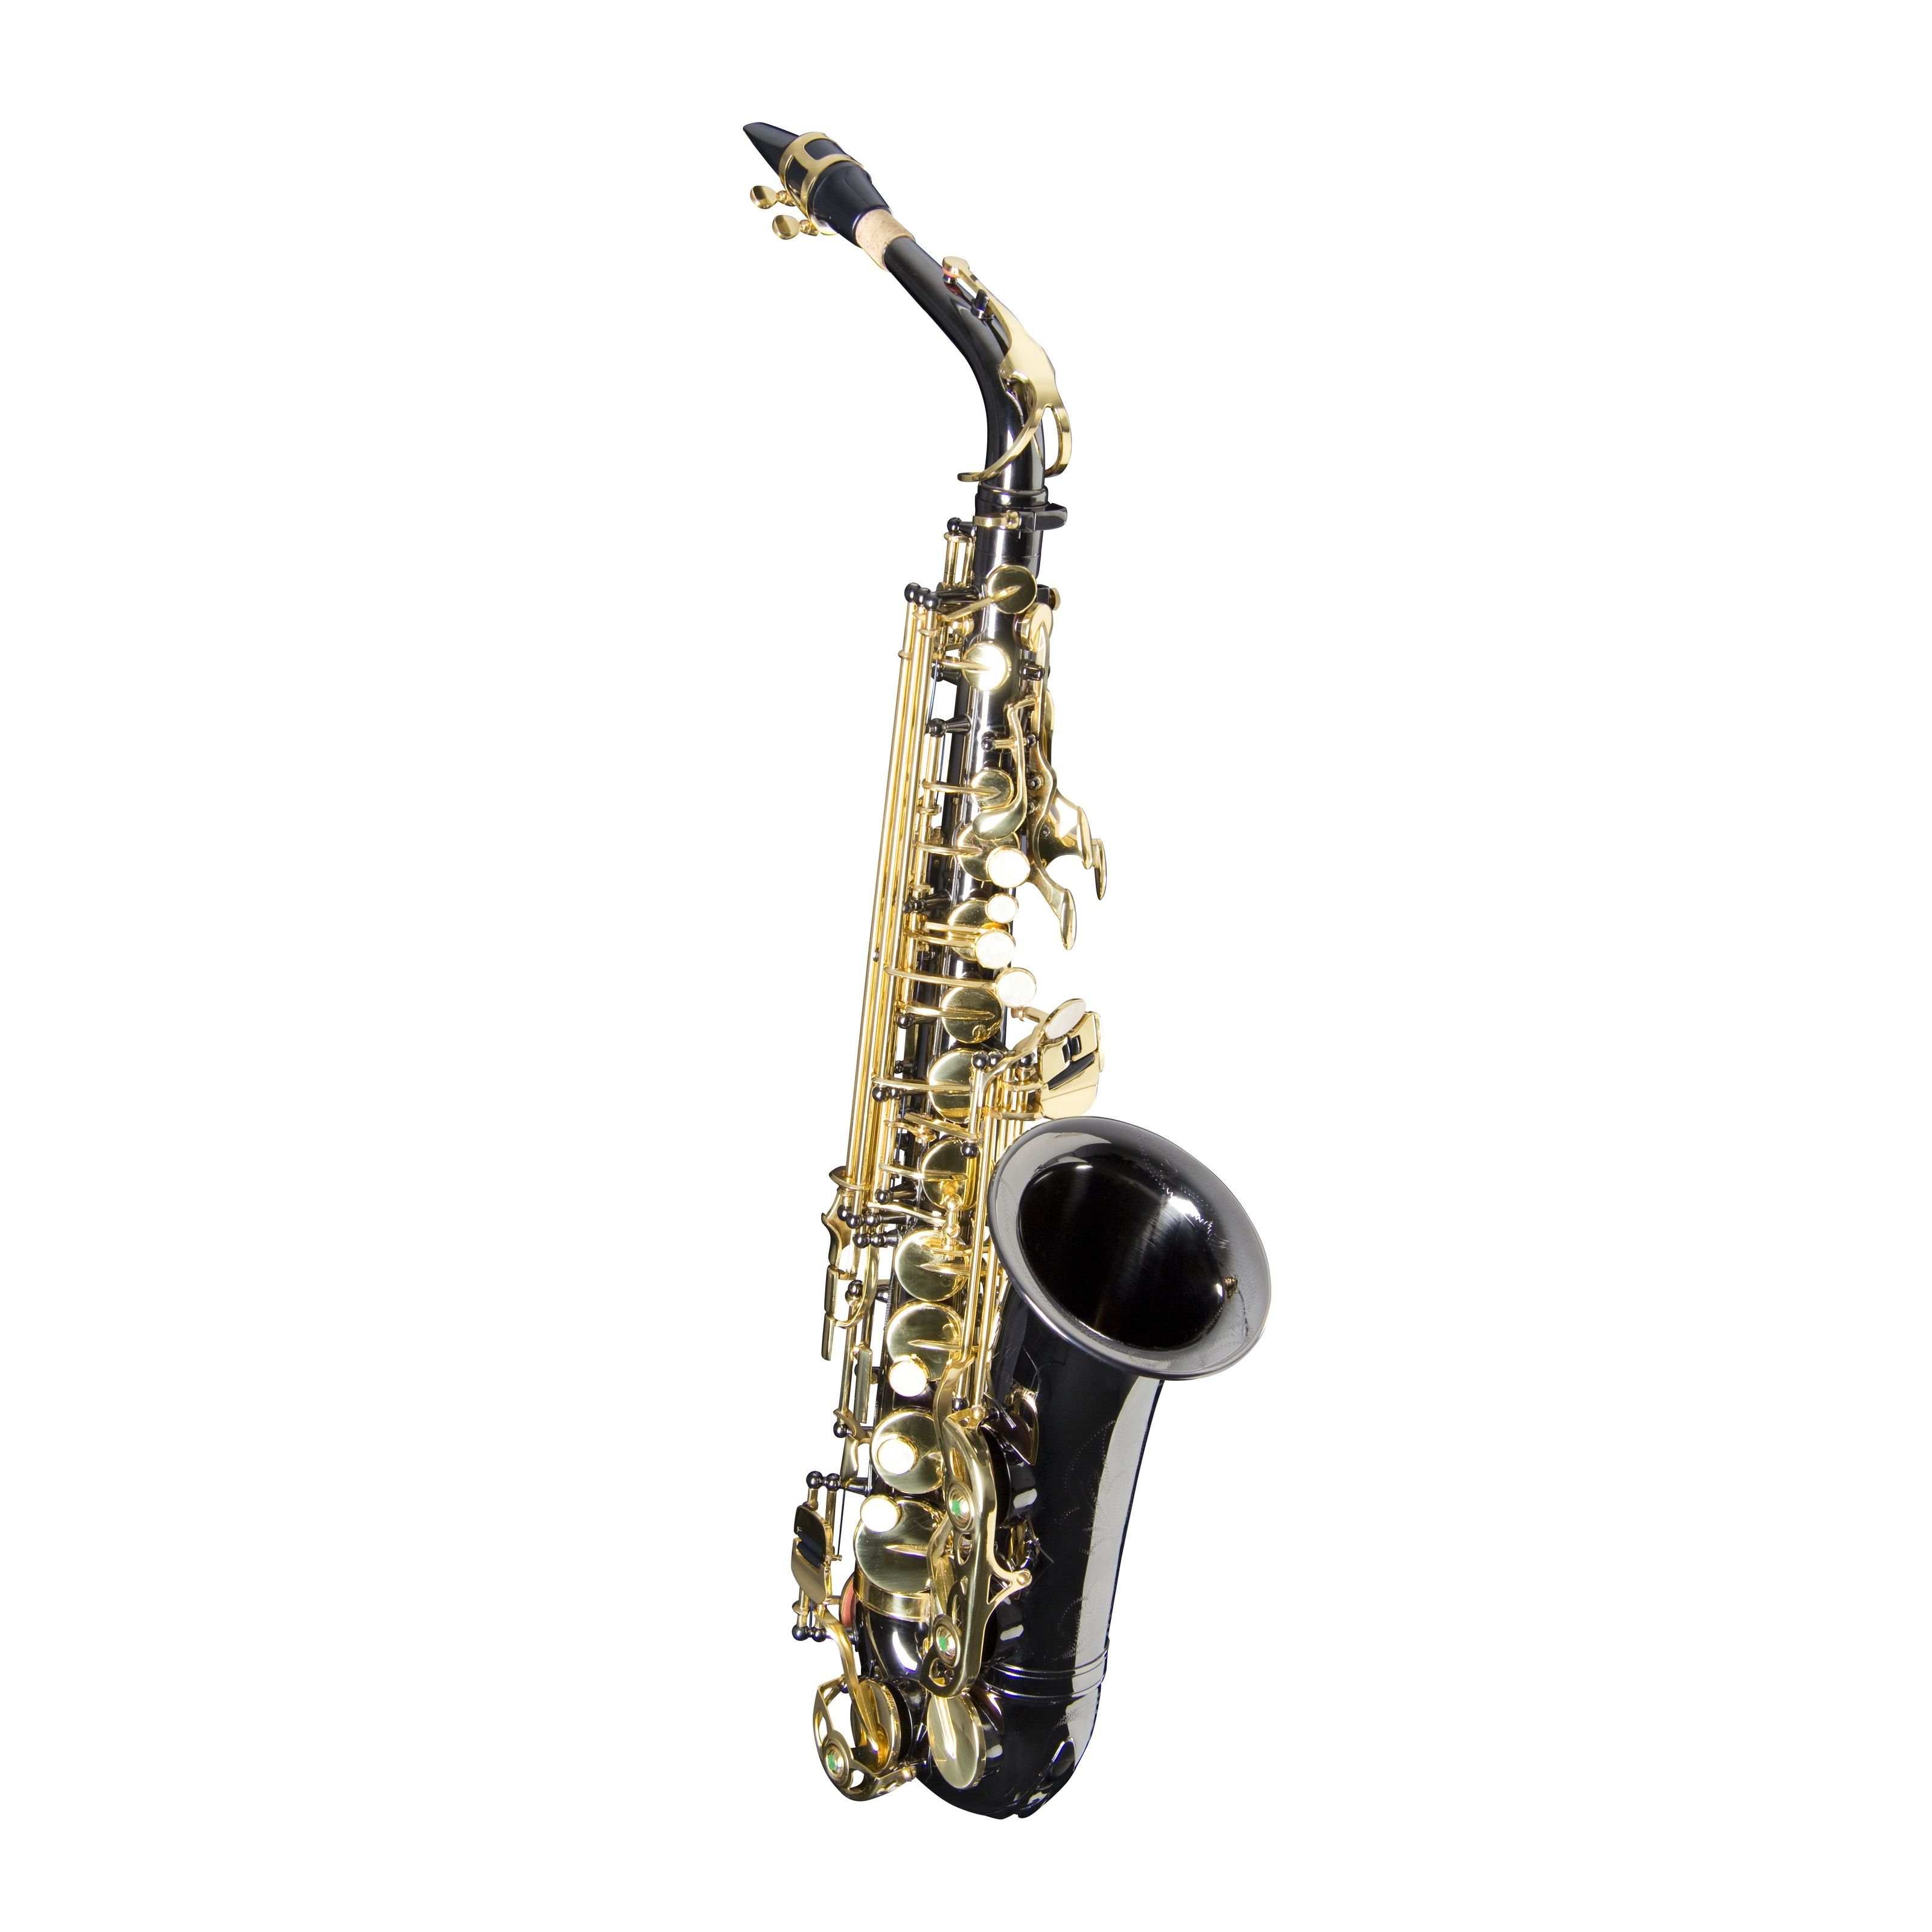 Monzani Saxophon, MZAS-333 Altsaxophon Schwarz Lackiert Messingkorpus Inklusive Mundstück und Koffer Rucksackvorrichtung Gravur Stimmung Eb 2.62 kg Ideal für Einsteiger und Zweitinstrument, Saxophone, Alt Saxophone, Altsaxophon, Schwarz Lackiert, Einsteiger saxophon